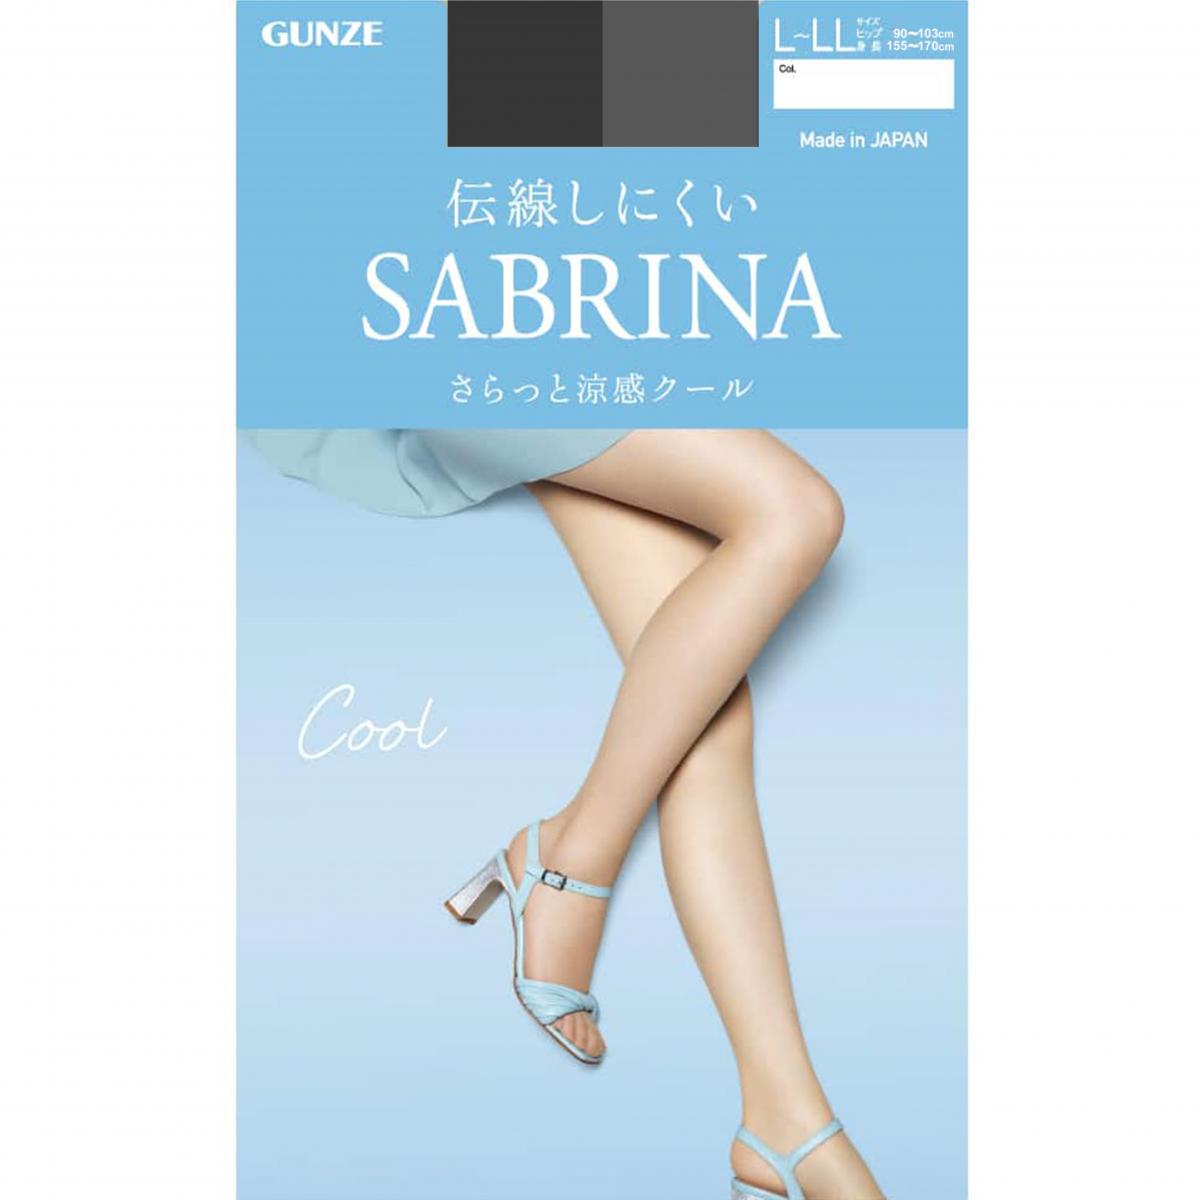 SABRINA Stockings cool 夏季 涼感絲襪 (026黑色) SB570L Size: L-LL - 36796